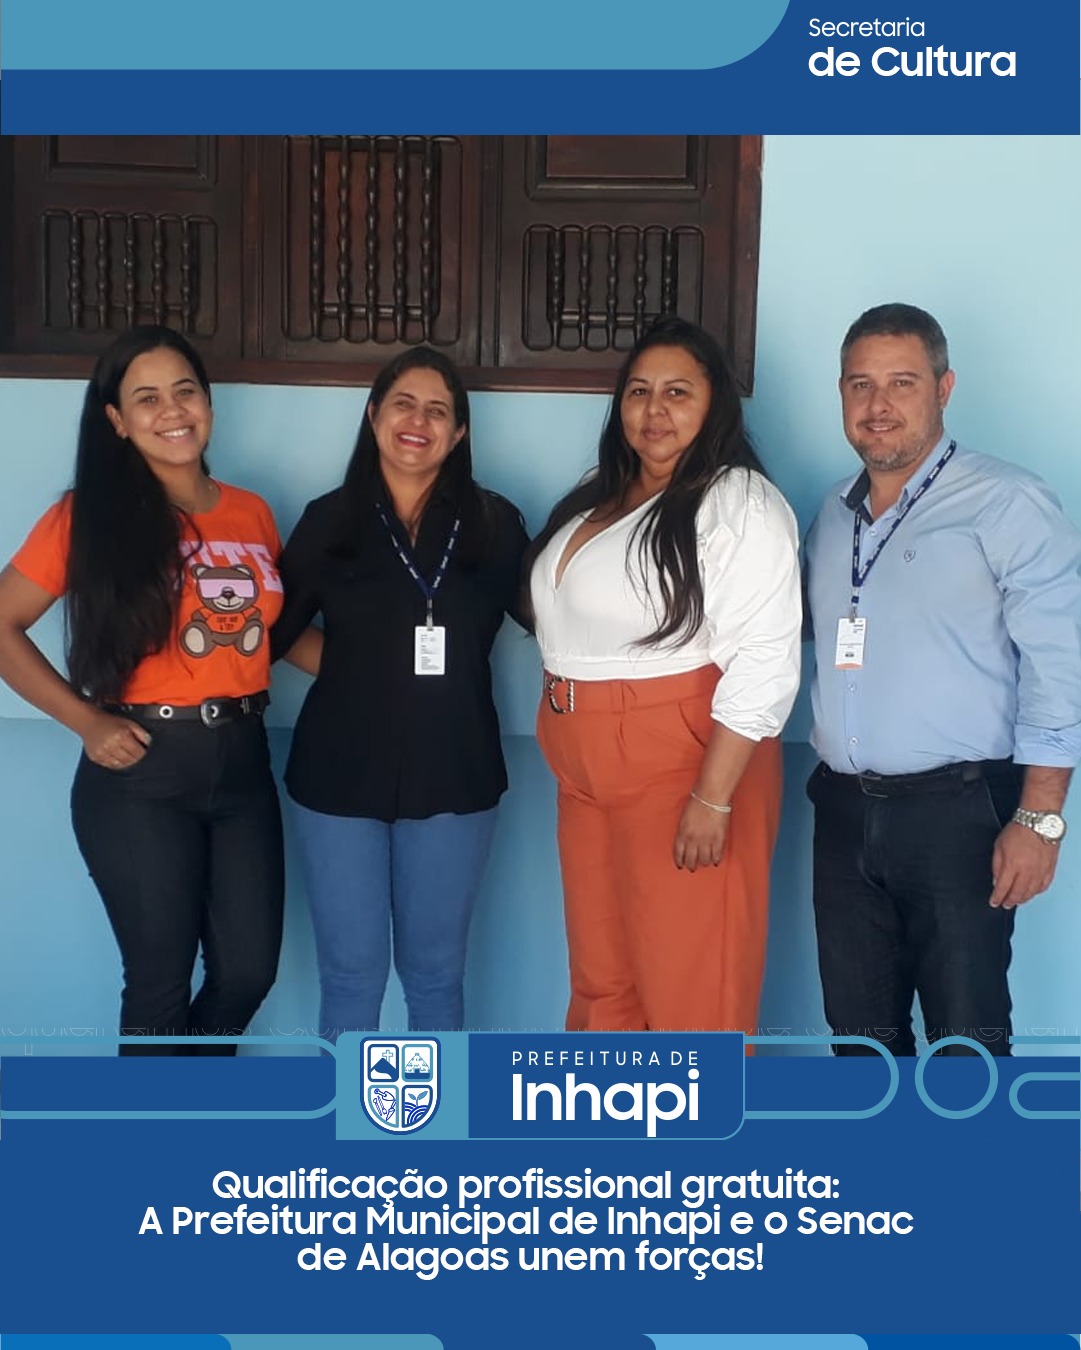 Prefeitura de Inhapi participa da etapa Estadual da 5ª Conferência